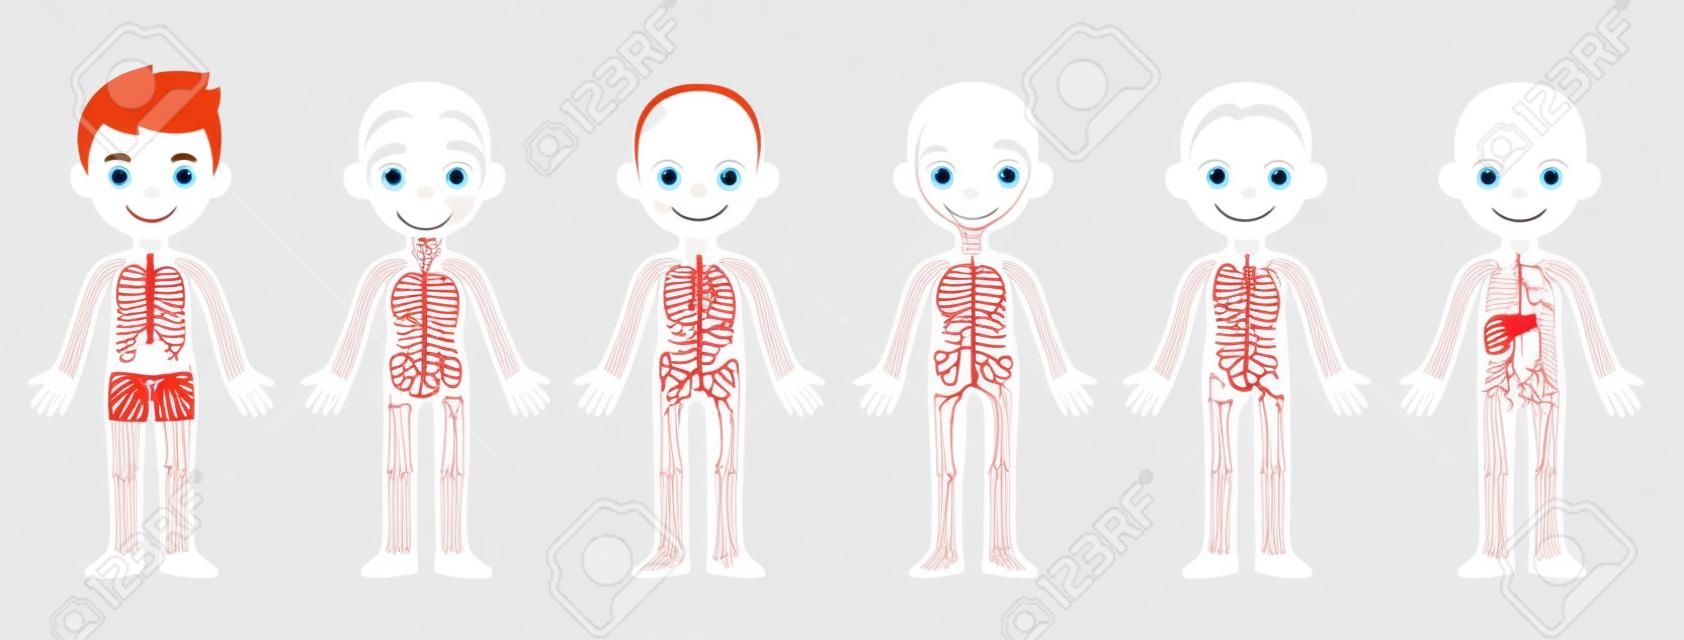 Mon corps, organigramme d'anatomie éducative pour les enfants. Petit garçon mignon de bande dessinée et ses systèmes corporels : musculaire, squelettique, circulatoire, nerveux et digestif. Clipart infographie vecteur isolé.